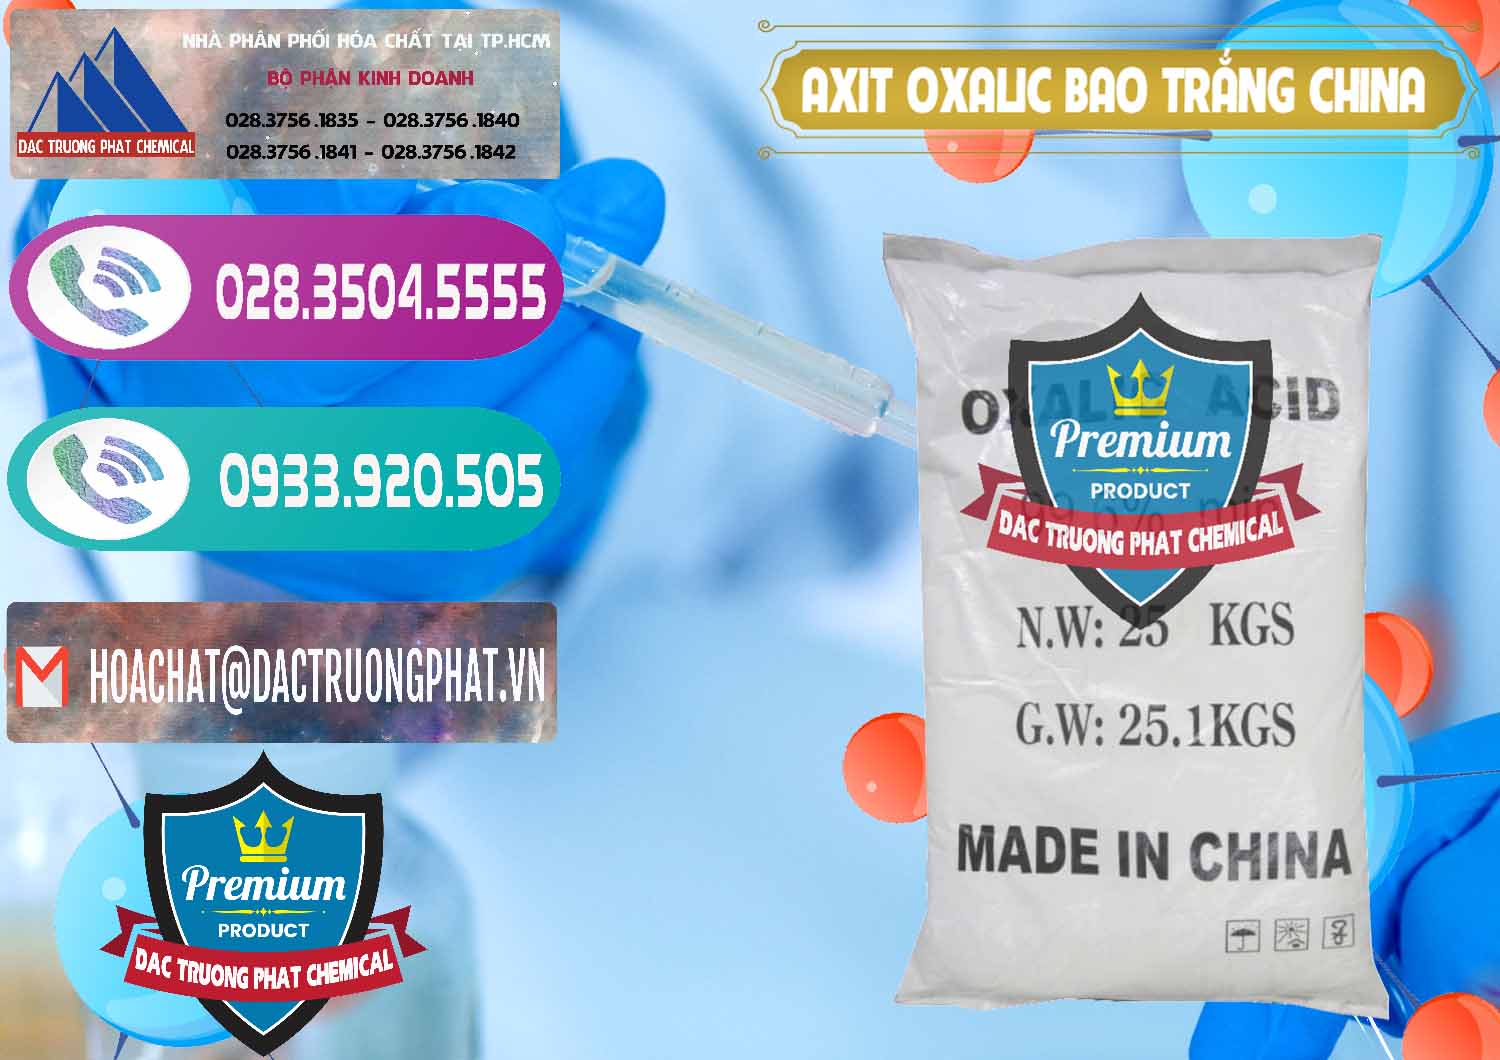 Cty chuyên cung ứng _ bán Acid Oxalic – Axit Oxalic 99.6% Bao Trắng Trung Quốc China - 0270 - Đơn vị chuyên nhập khẩu ( cung cấp ) hóa chất tại TP.HCM - hoachatxulynuoc.com